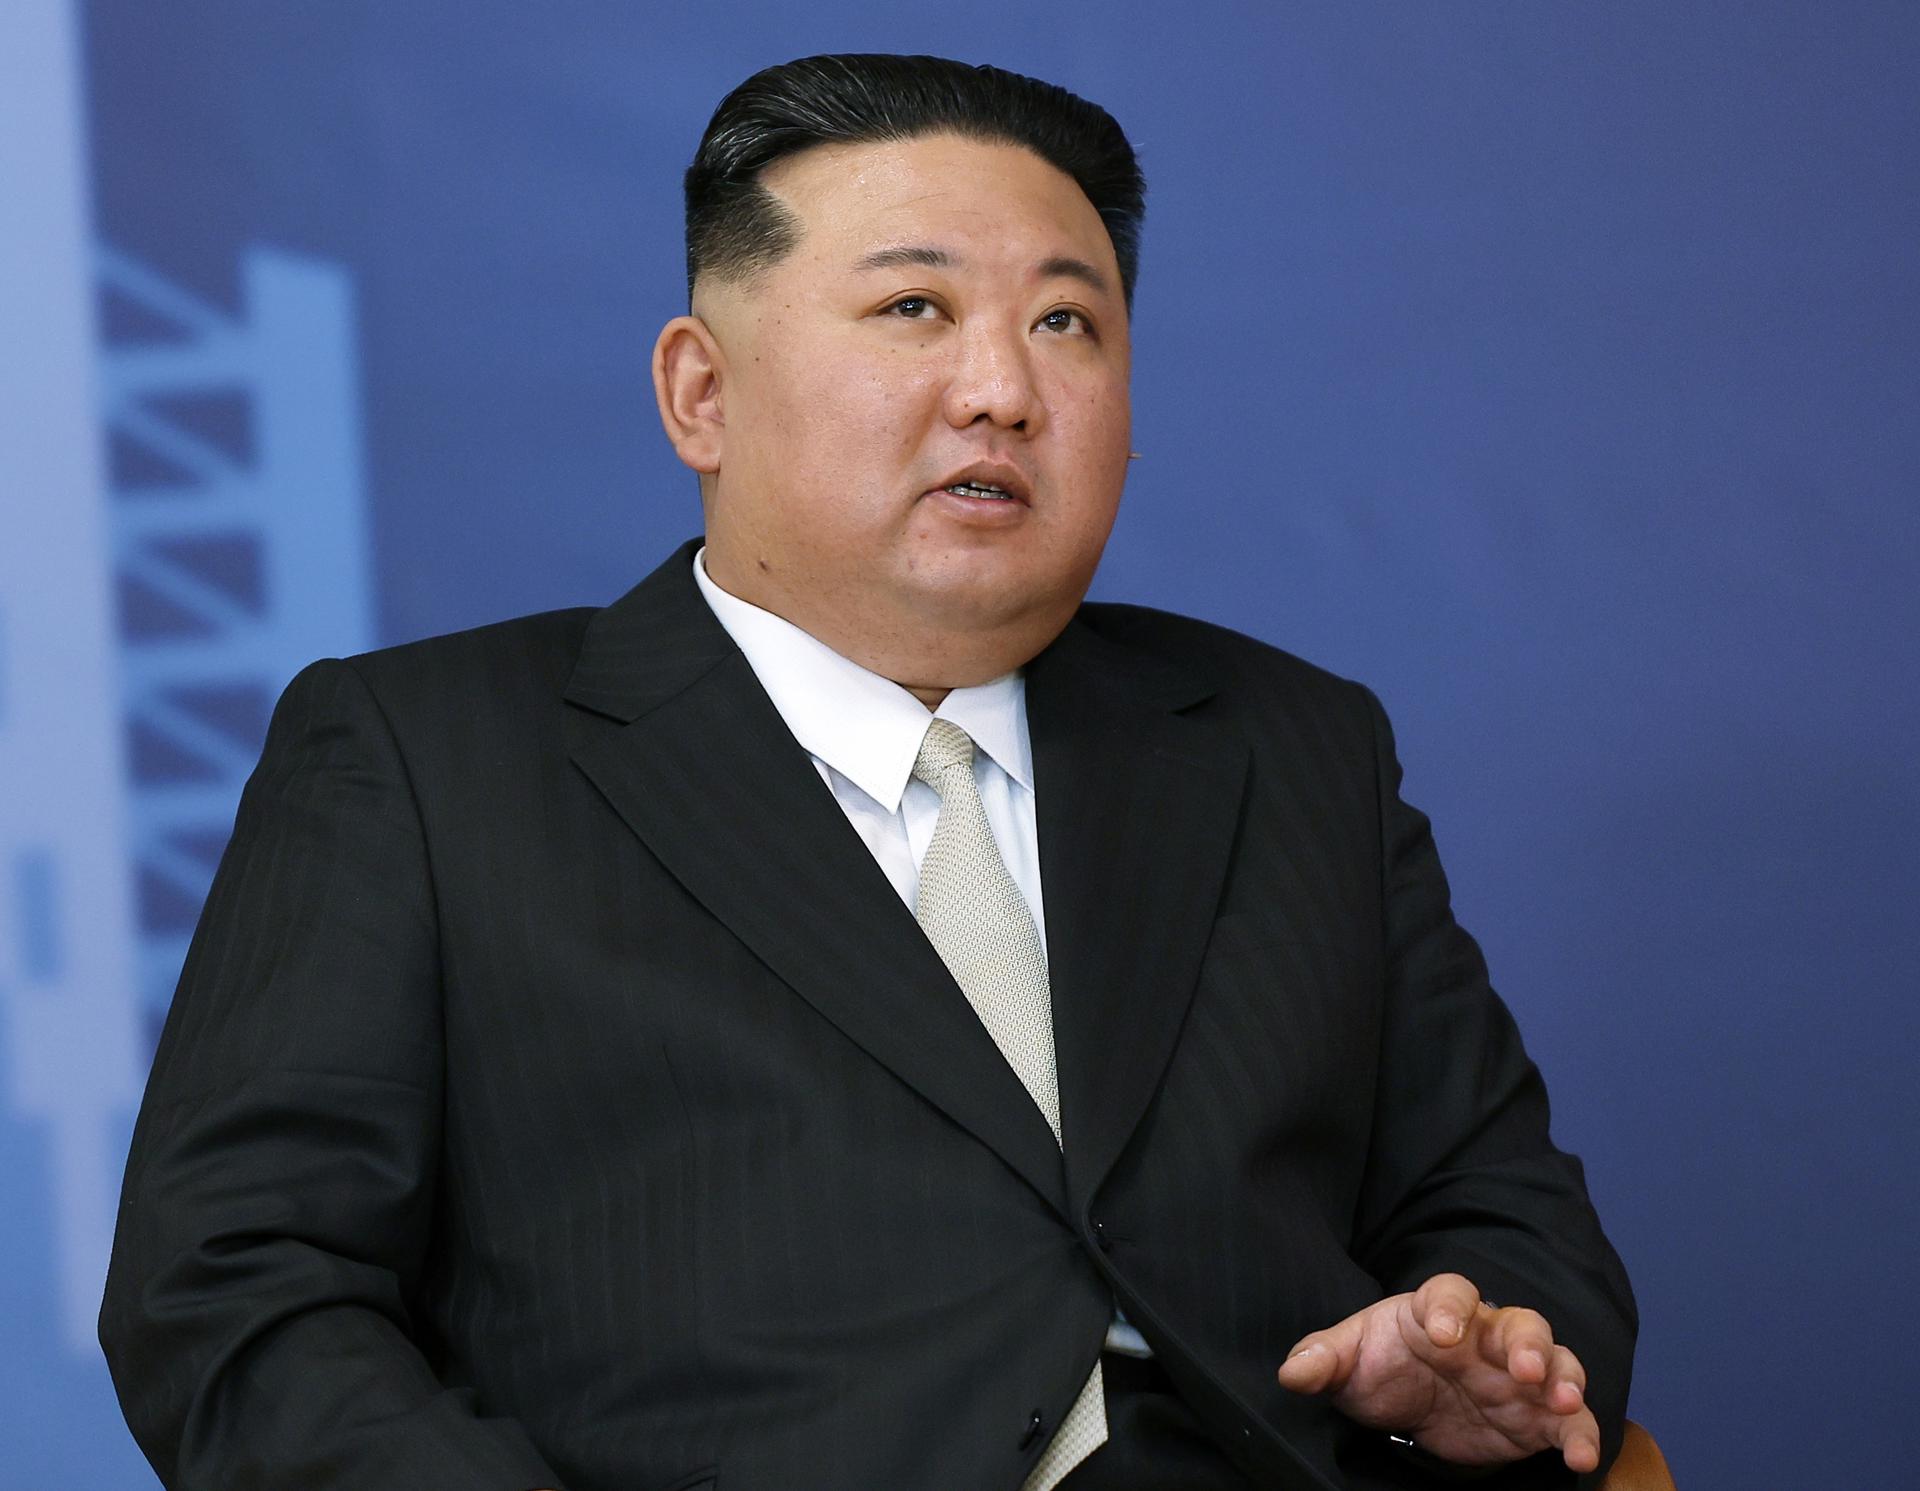 El líder norcoreano, Kim Jong-un, en una fotografía de archivo. EFE/Vladimir Smirnov/Sputnik